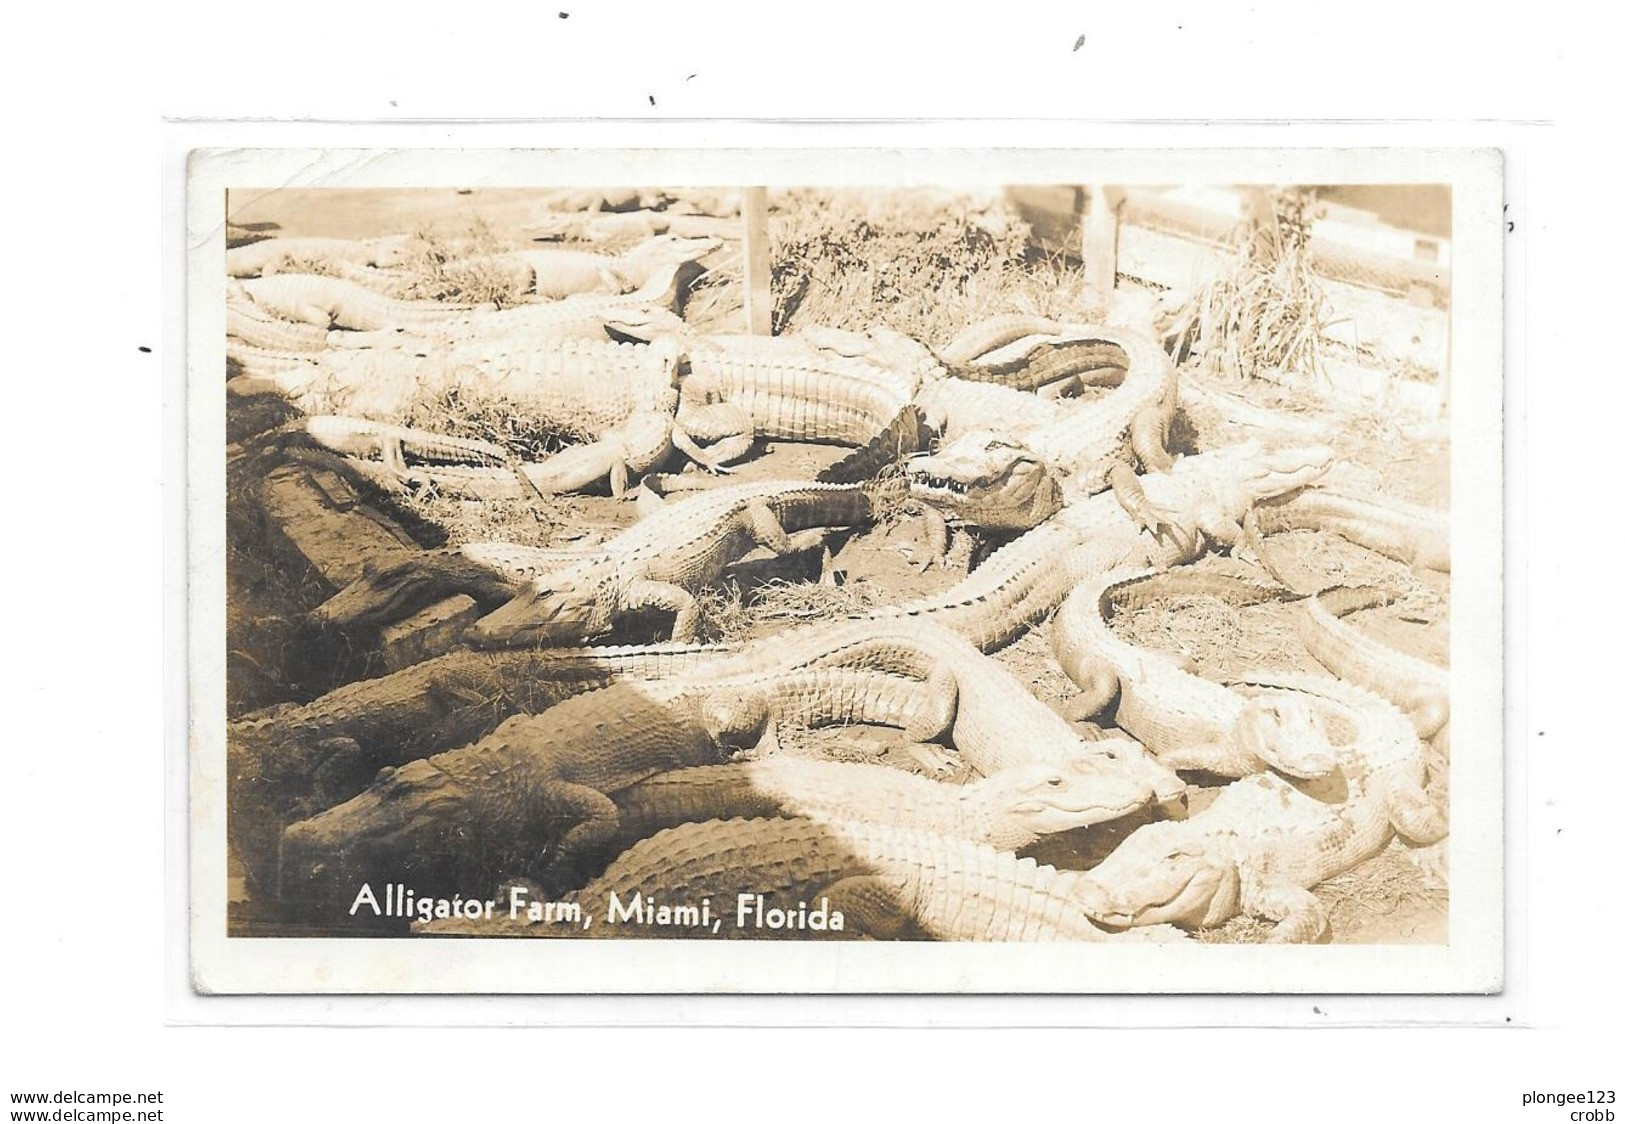 Alligator Farm, MIAMI, FLORIDA - Miami